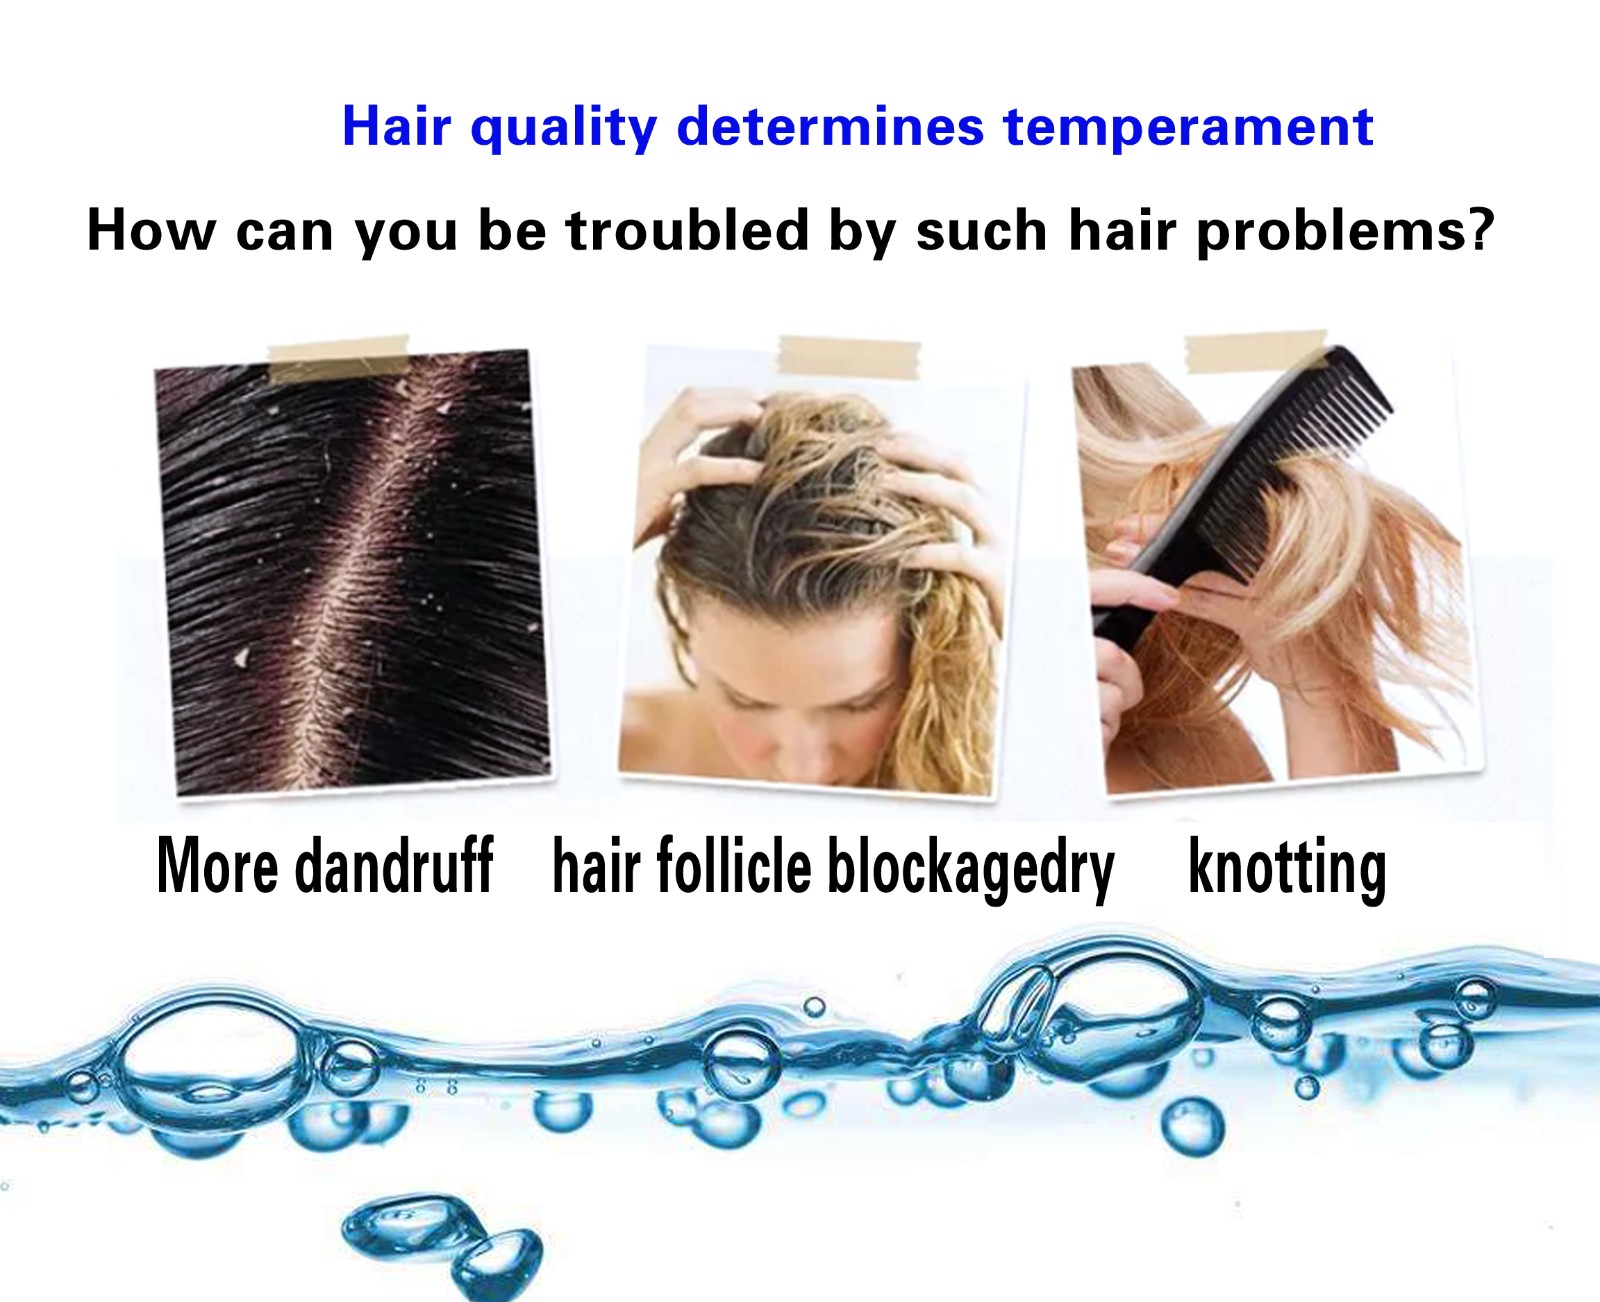 DR.DAVEY 2 in 1 keratin perfume shampoo smoothing hair   INGREDIENTS :